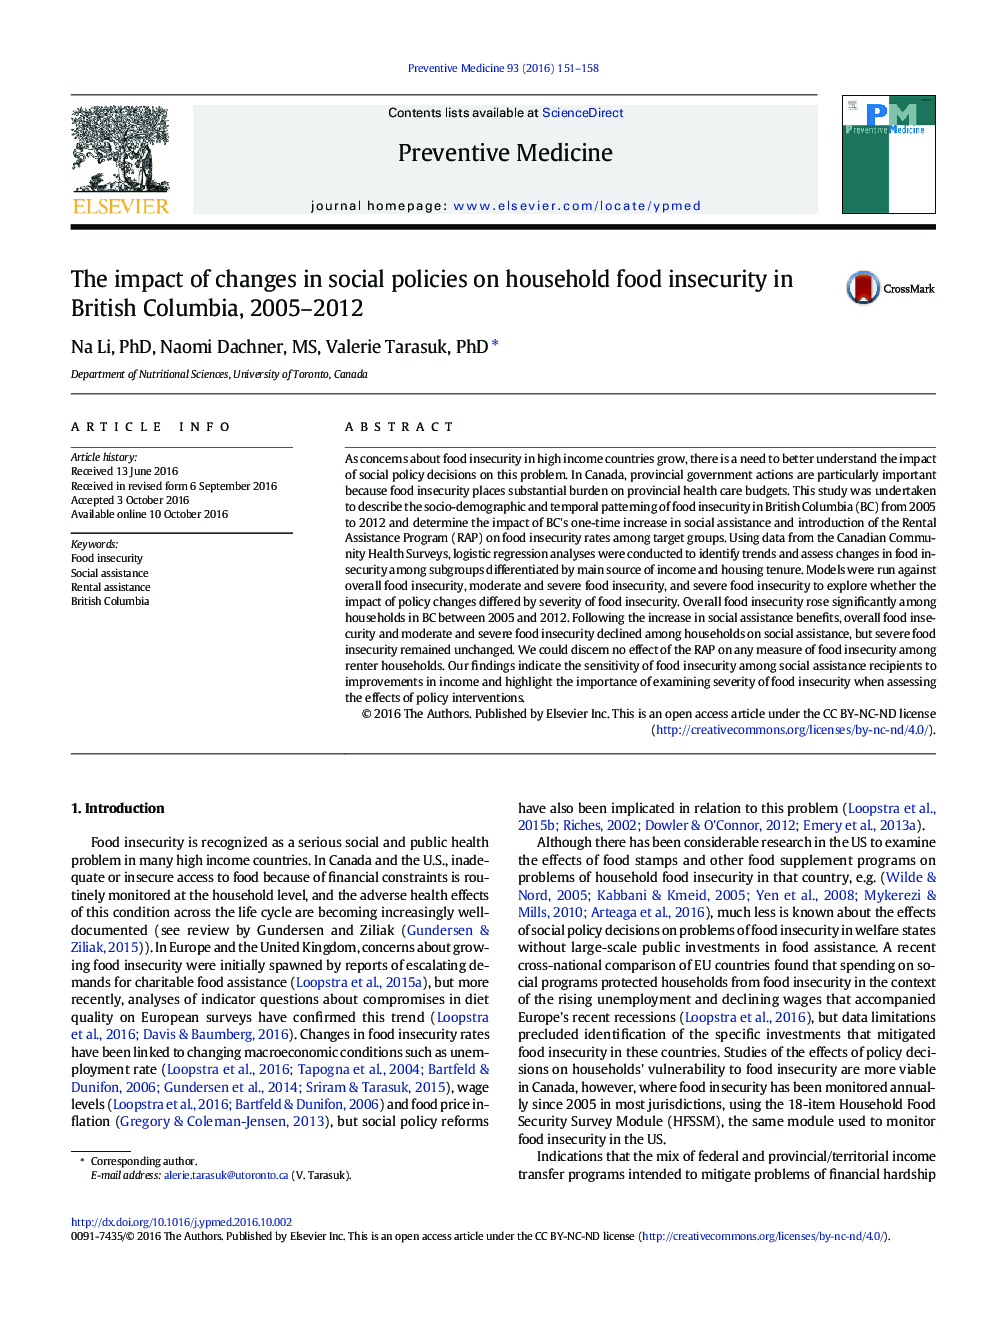 تاثیر تغییرات در سیاست های اجتماعی بر ناامنی غذایی خانوار در بریتیش کلمبیا، 2005-2012 